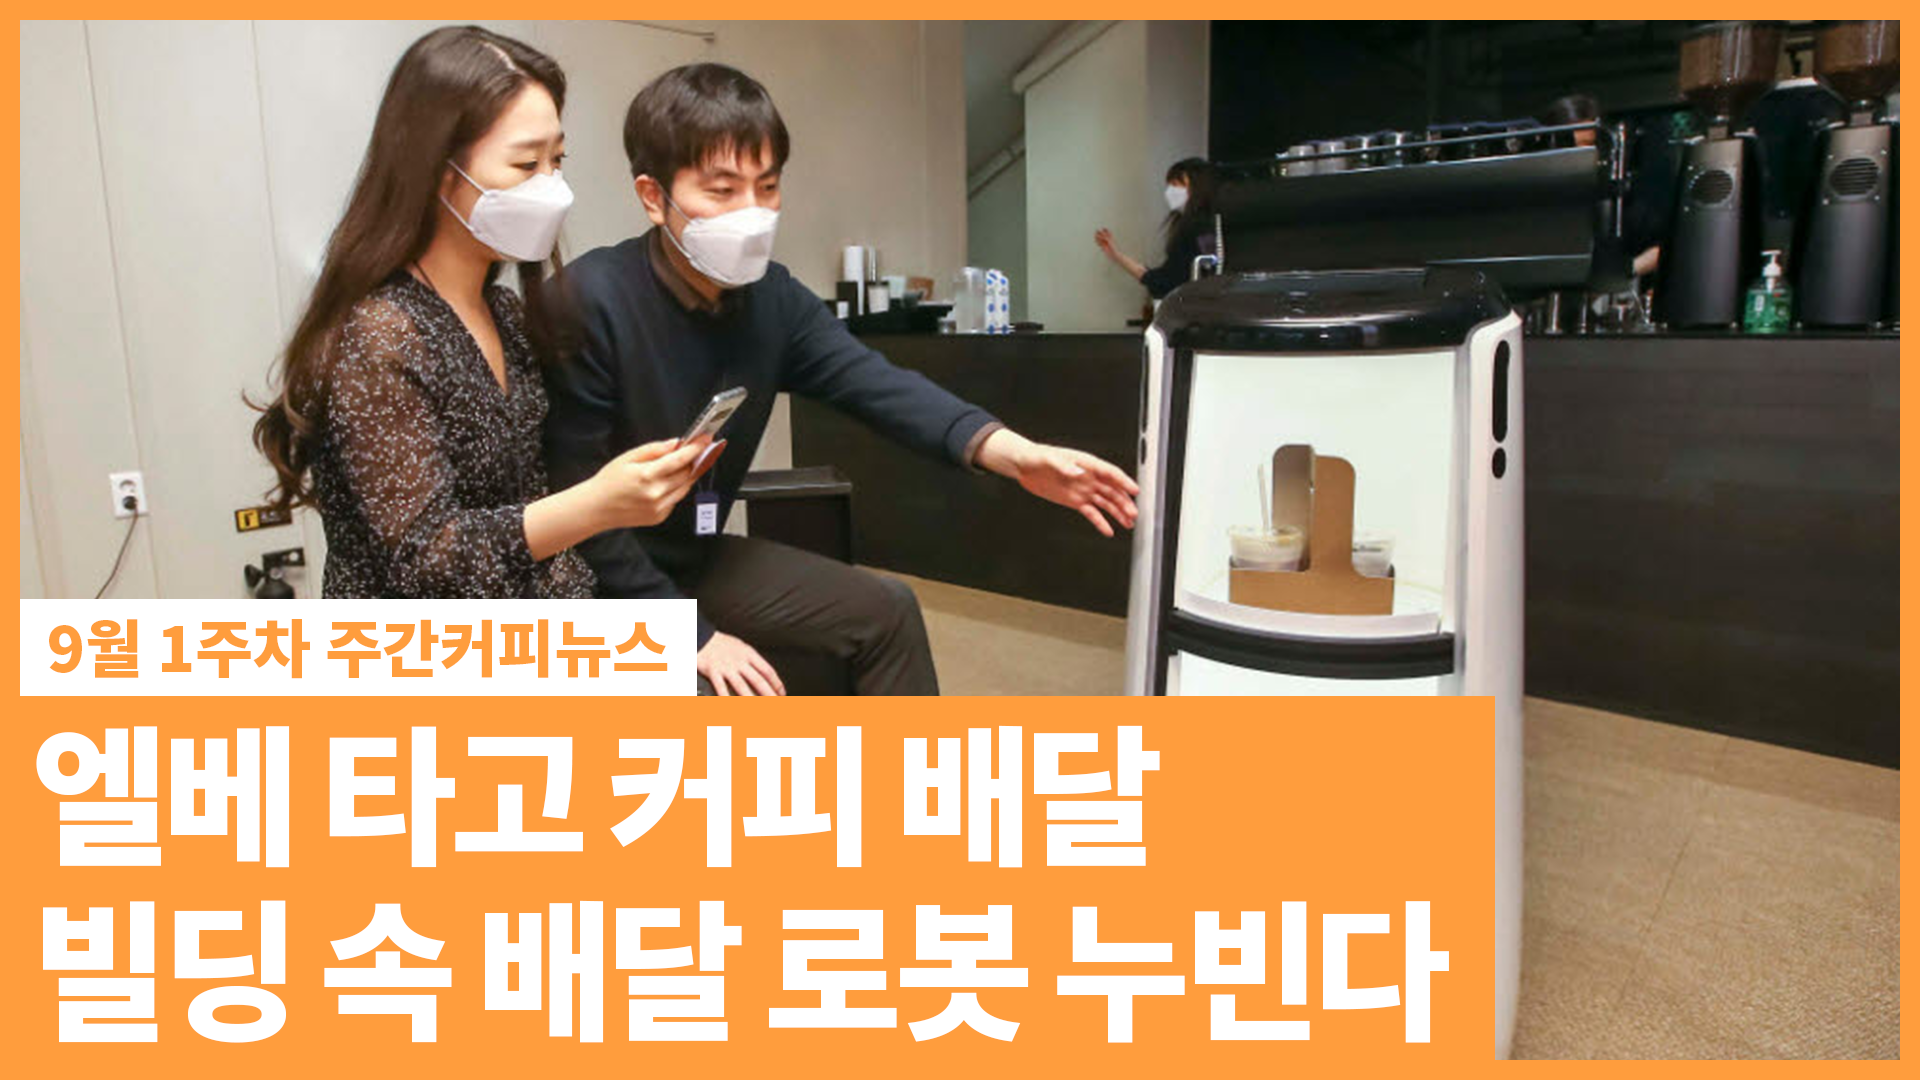 엘베 타고 커피 배달! 빌딩 속 배달 로봇 누빈다 | 9월 1주 주간커피뉴스, 커피TV